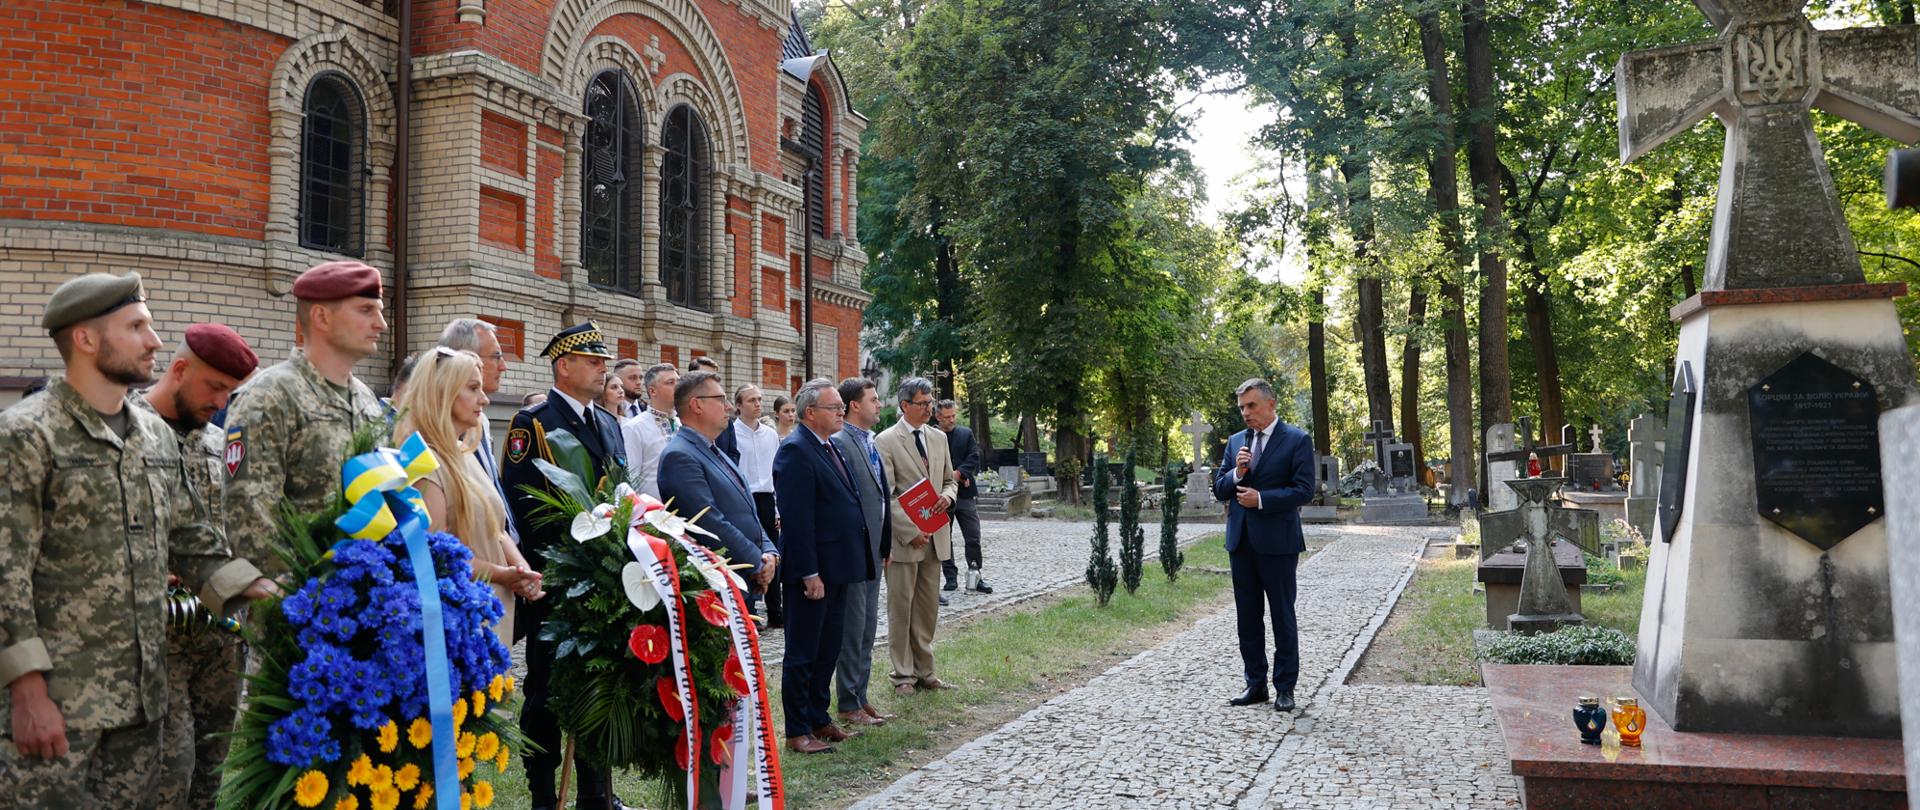 Wojewoda lubelski Lech Sprawka przemawia na cmentarzu podczas lubelskich obchodach 32. rocznicy Niepodległości Ukrainy.
